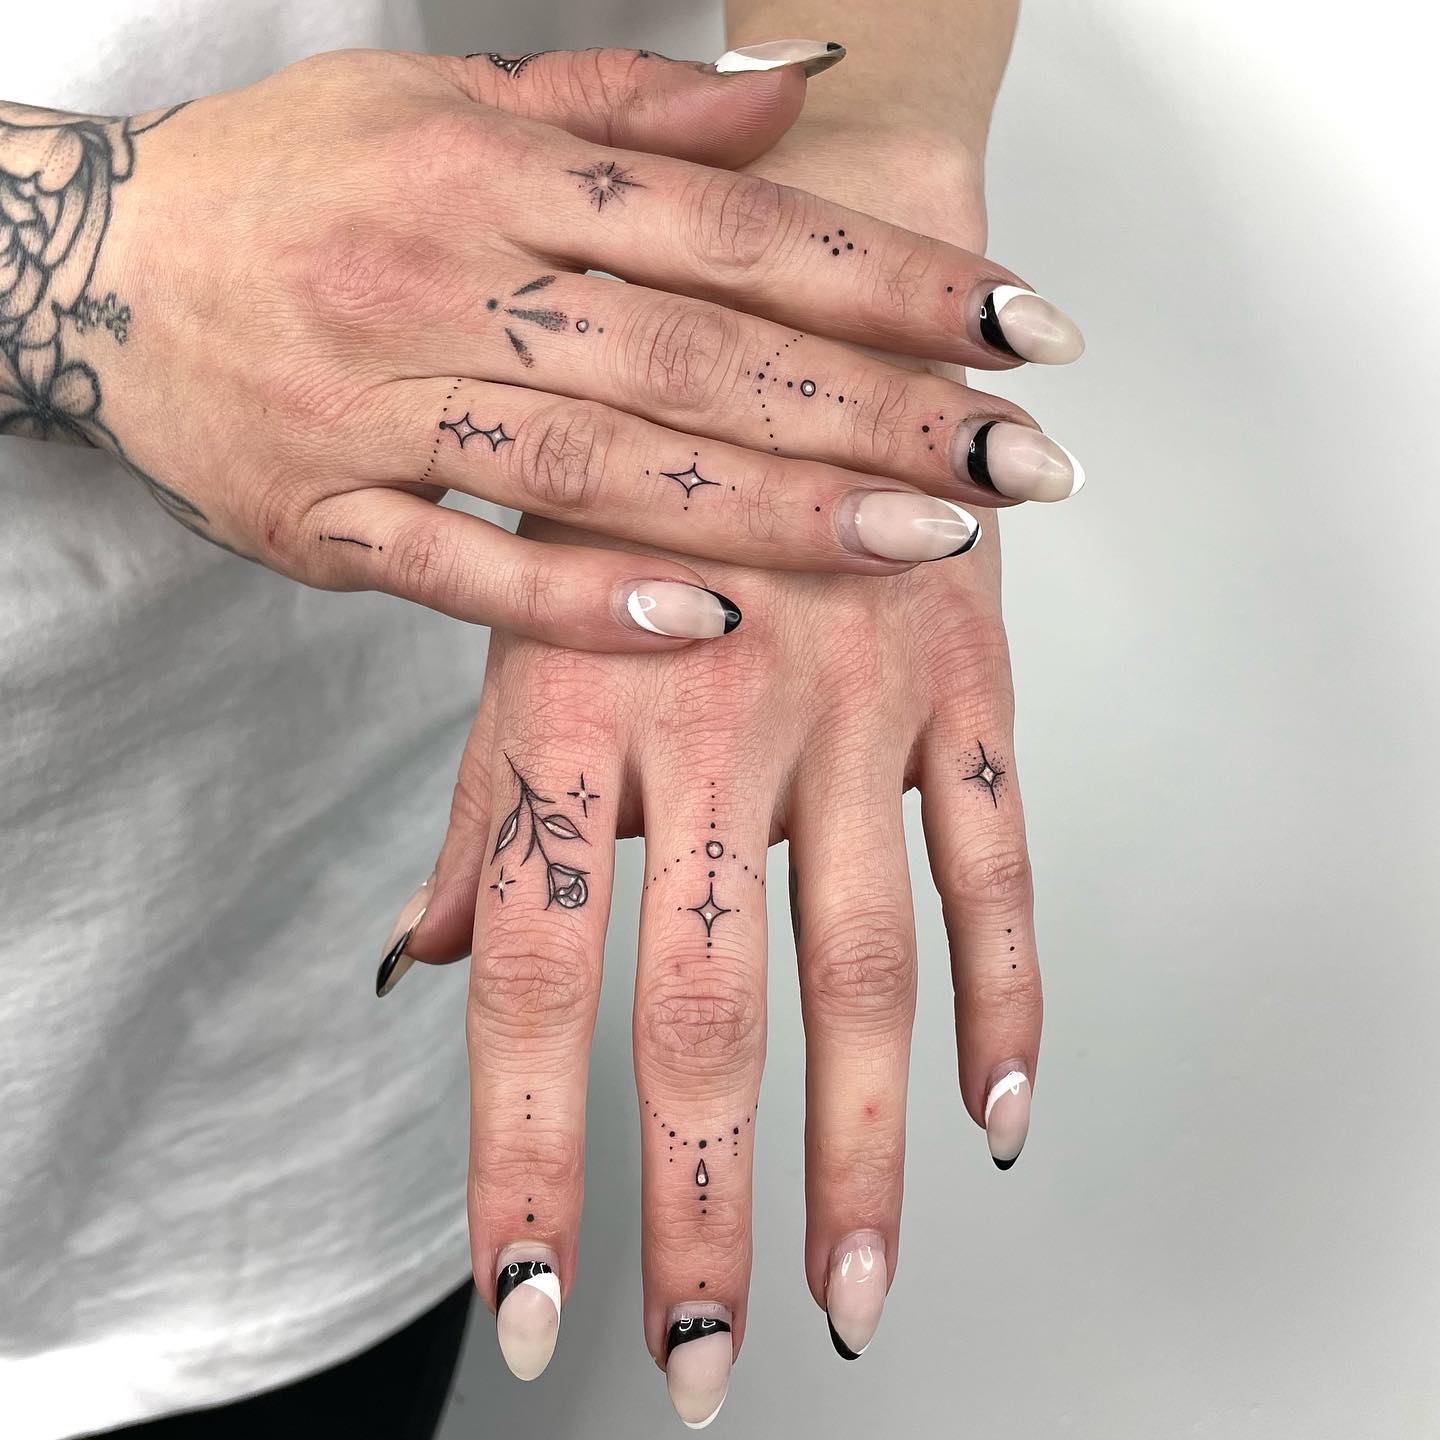 Diseño de tatuaje místico en el dedo